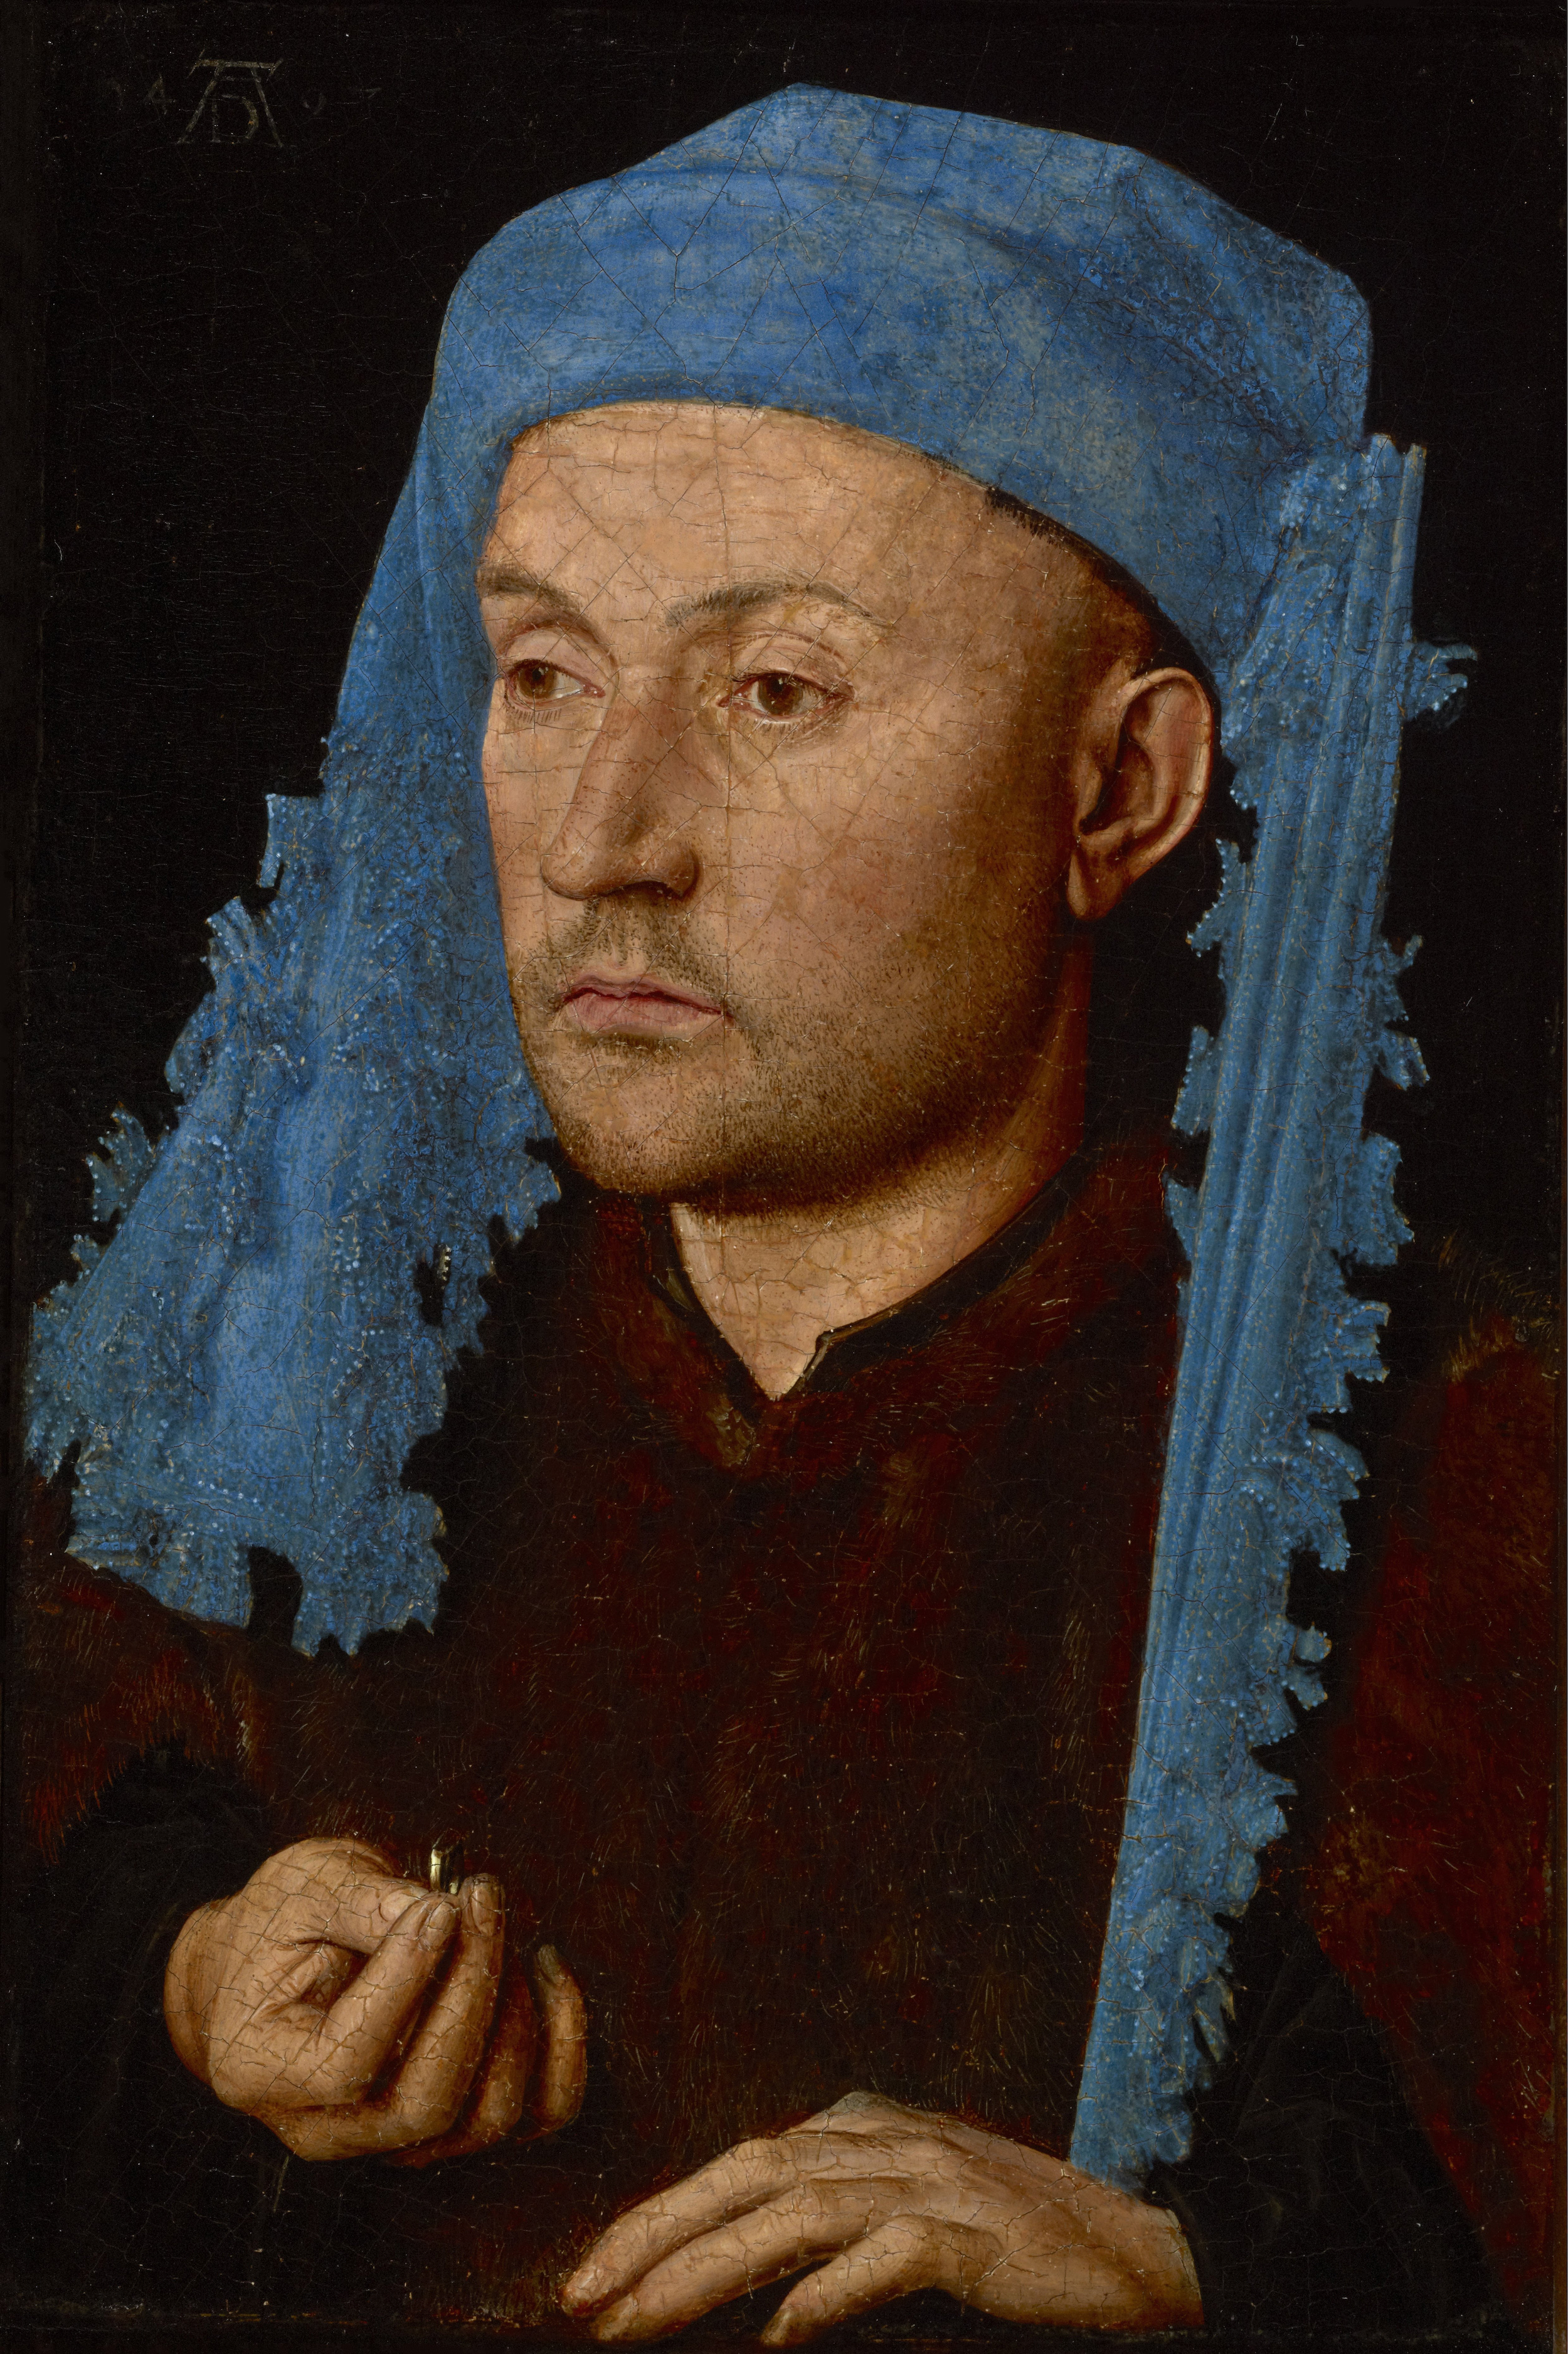 Mann mit der blauen Sendelbinde  by Jan van Eyck - c. 1430 - 13.2 x 19.1 cm Brukenthal-Nationalmuseum